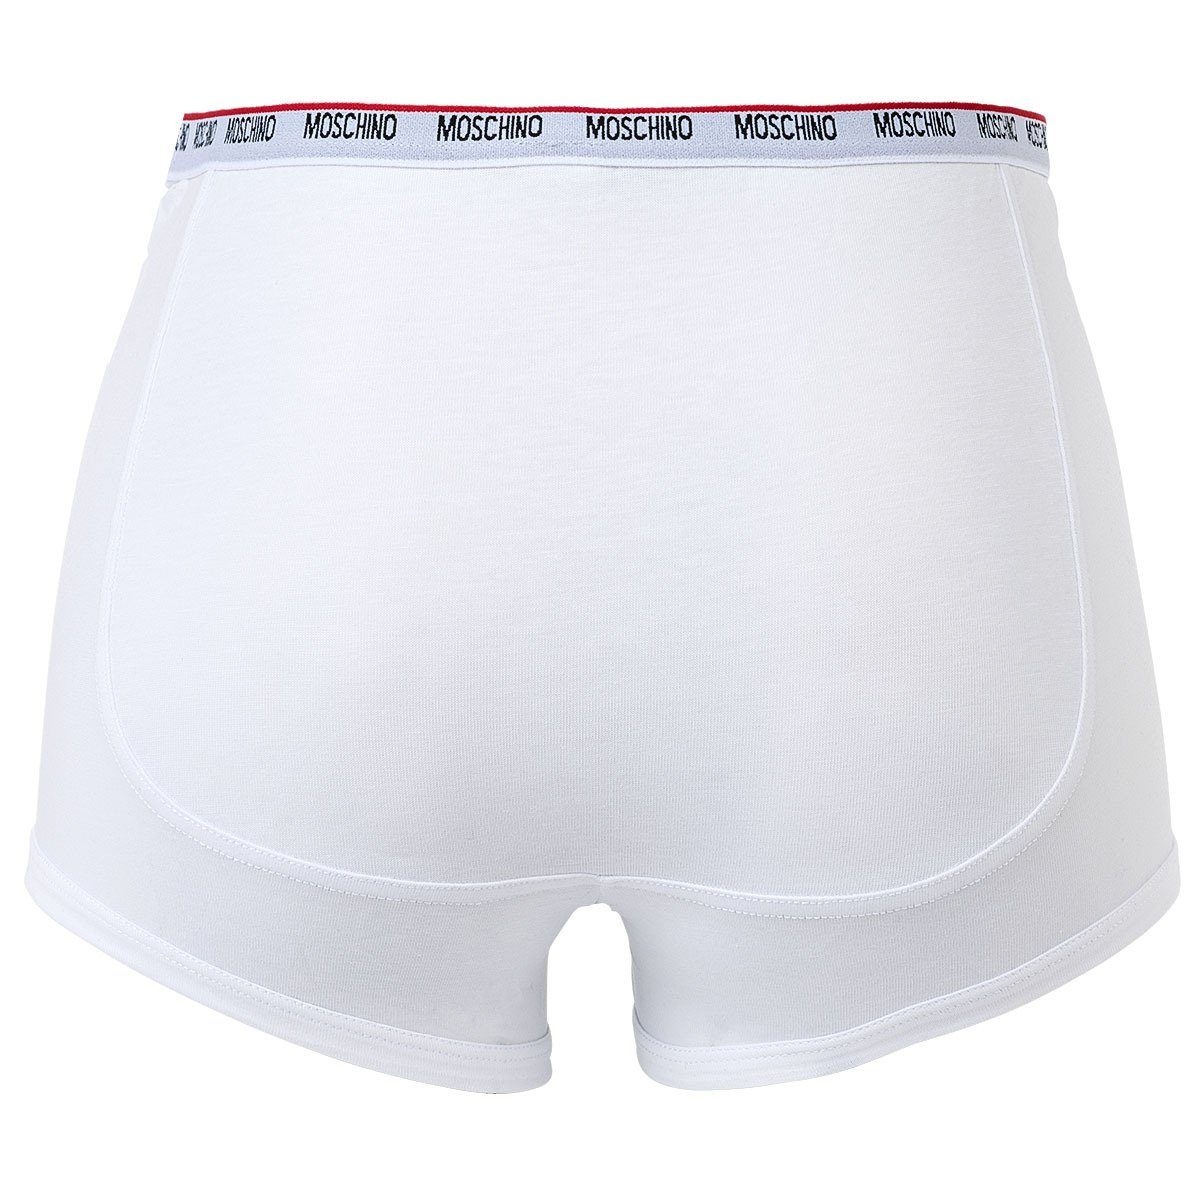 Moschino Boxer - Trunks, Unterhose, 2er Weiß Cotton Herren Shorts Pack